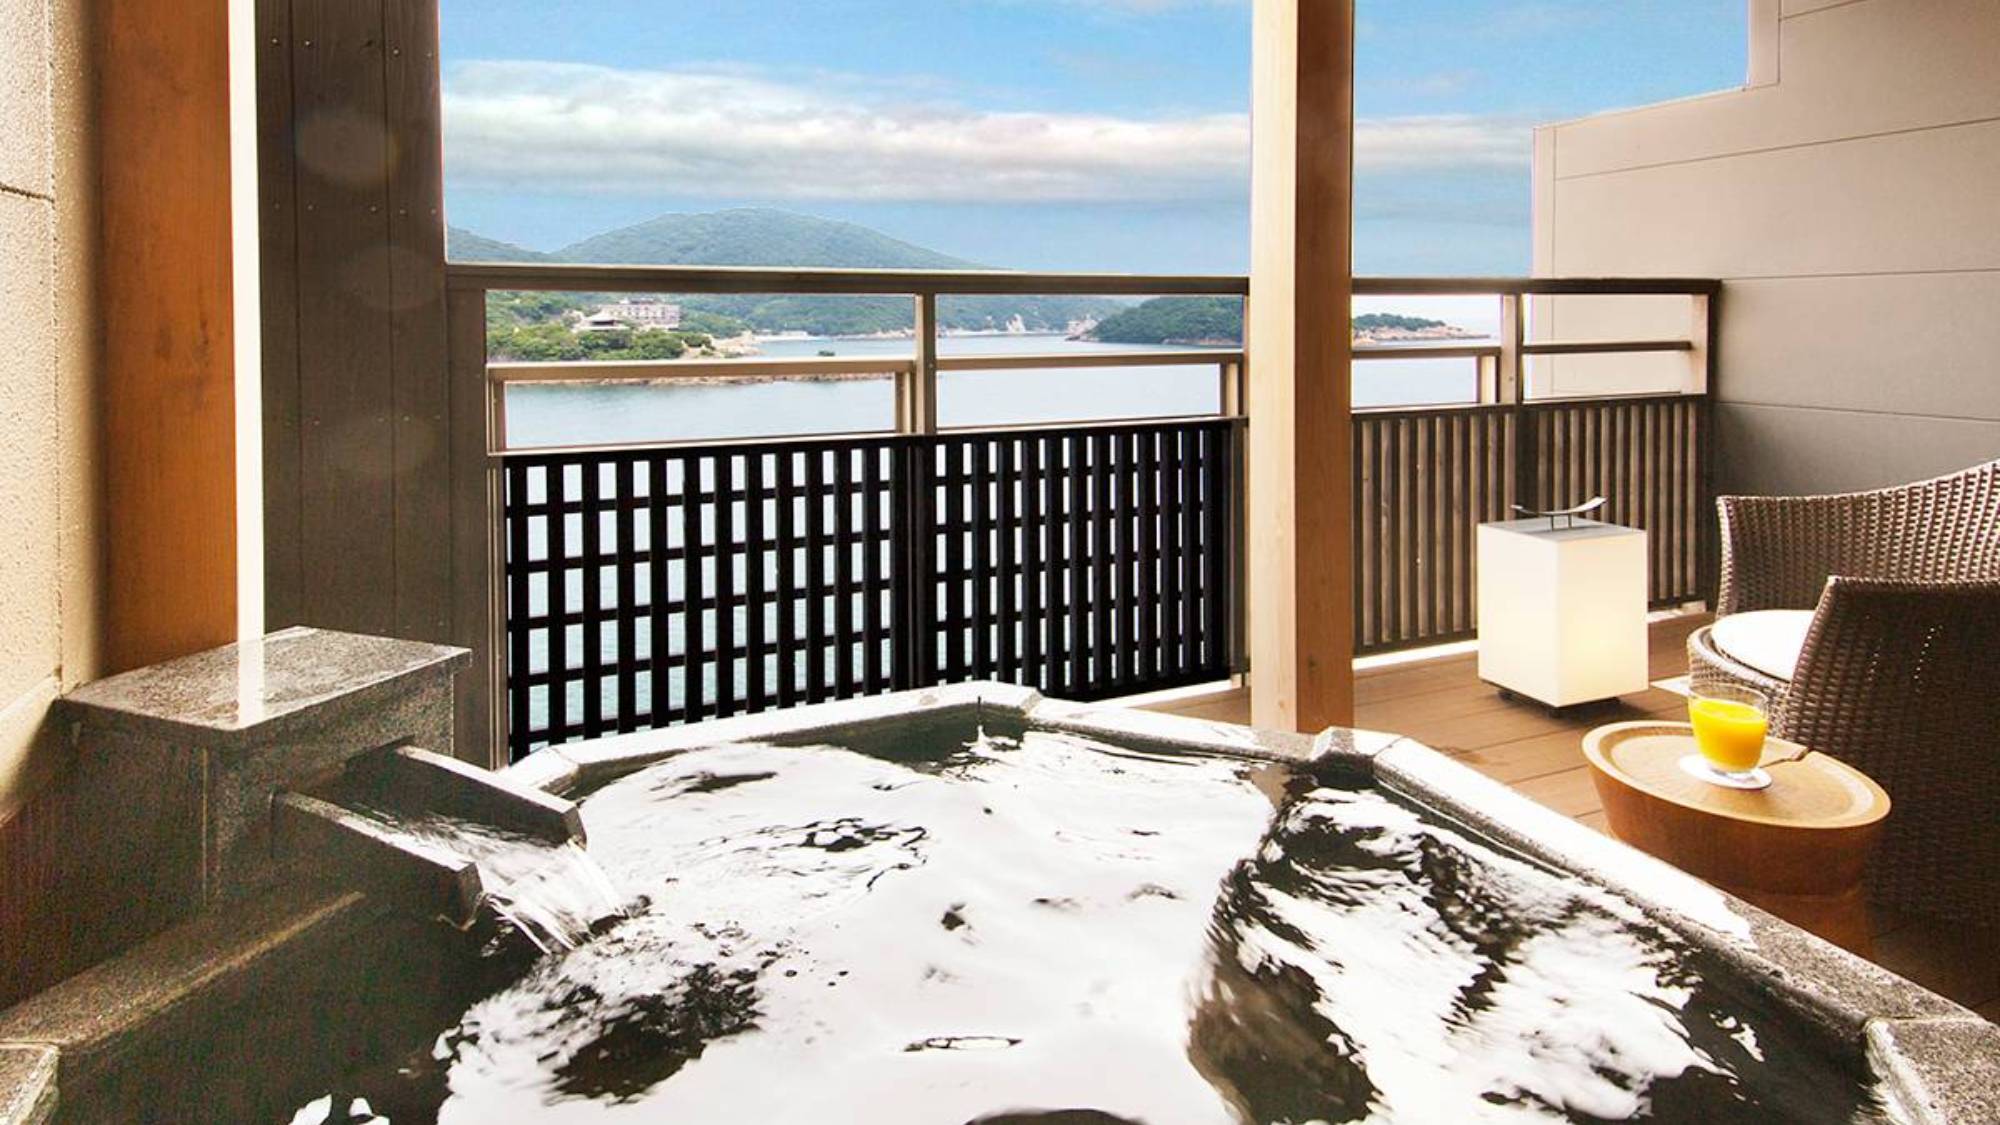 ◆スイートルーム◆“御影石”でつくられた露天風呂とともに絶景空間をお愉しみ下さい